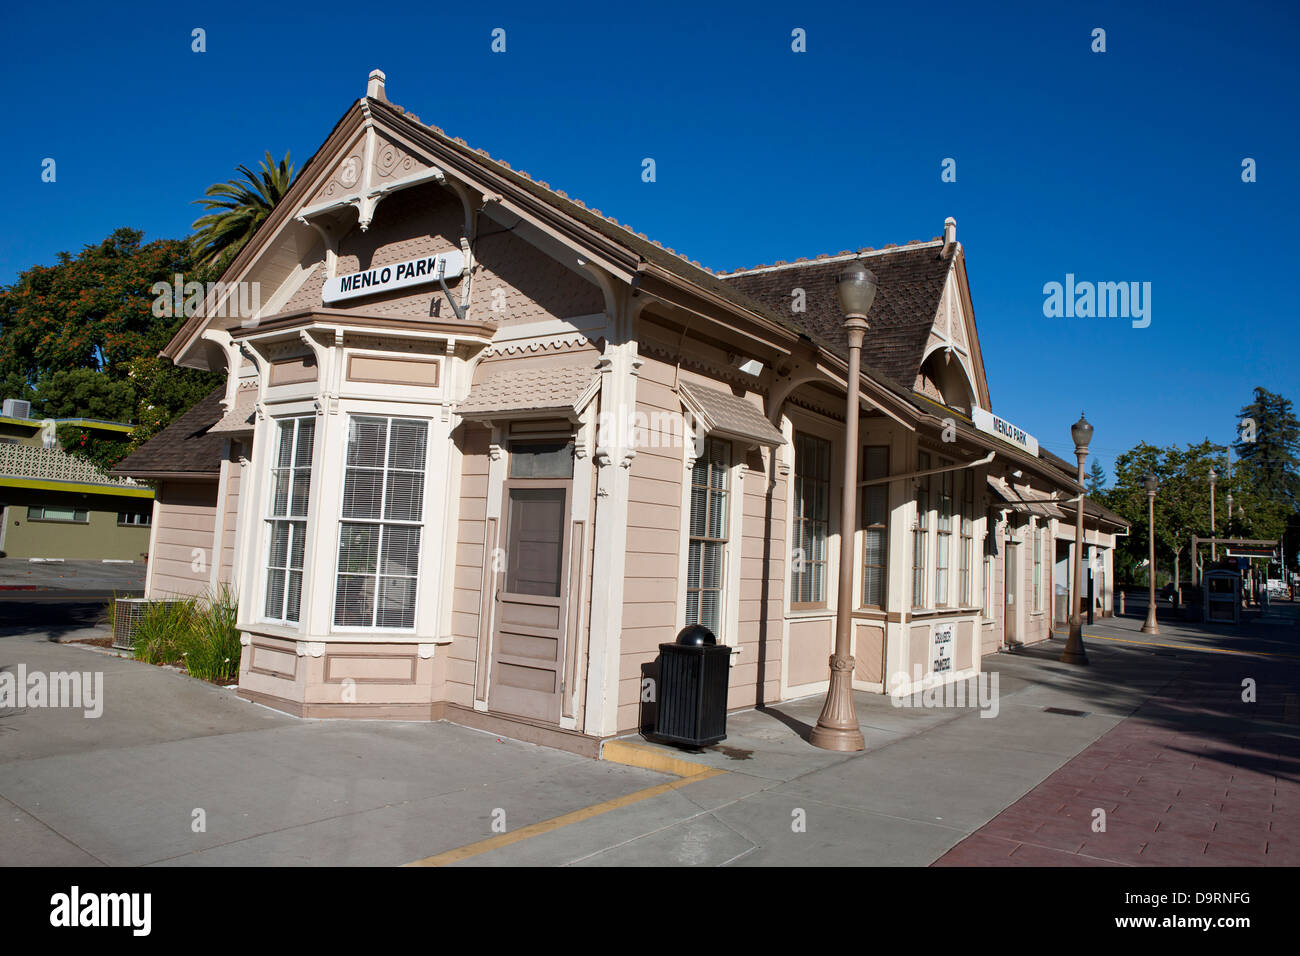 Menlo Park Stazione Ferroviaria, passeggeri più antica stazione ferroviaria in California, Menlo Park, California, Stati Uniti d'America Foto Stock